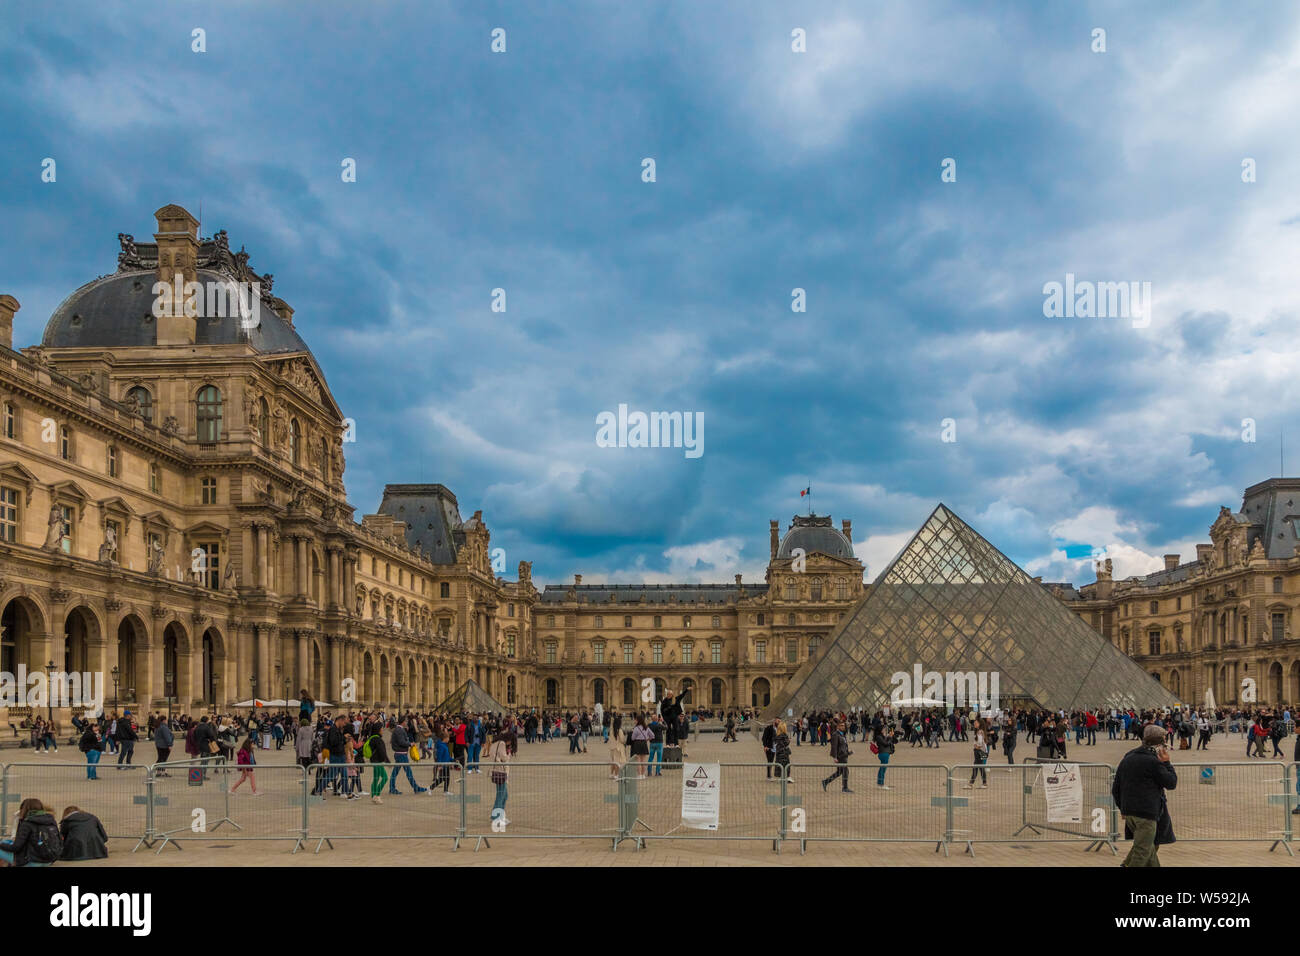 Di fronte al cortile del famoso Museo del Louvre con Ala Richelieu sulla sinistra, accanto a I.M. Pei iconici piramide in vetro isolato con... Foto Stock